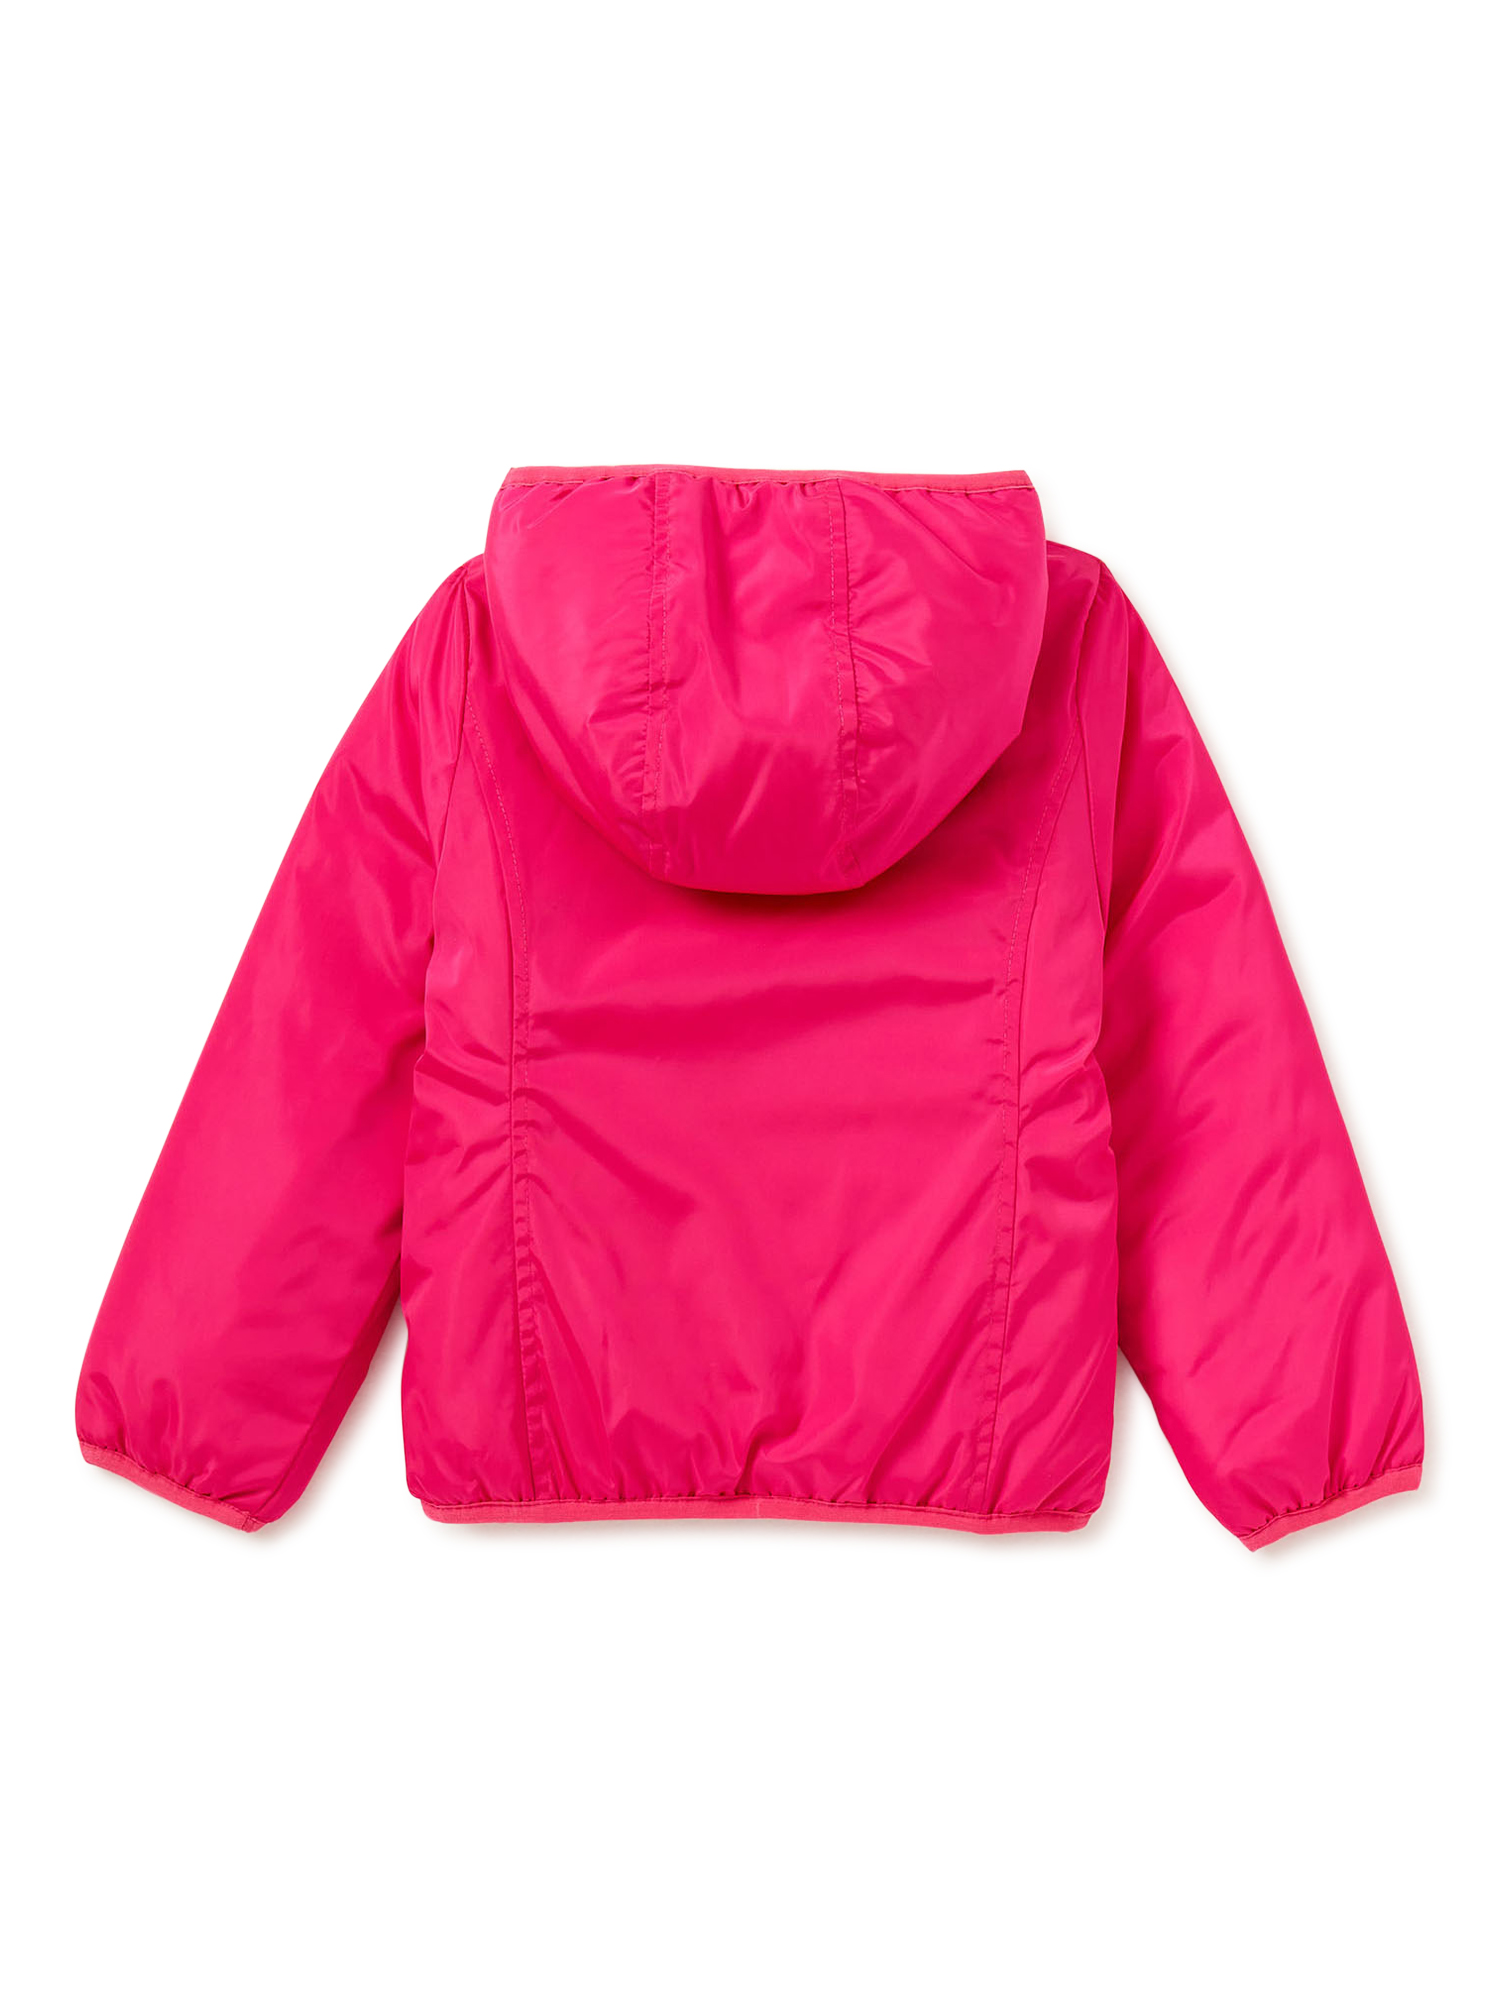 Atlantis Girls Reversible Puffer Jacket, Sizes 4-14 - image 2 of 4